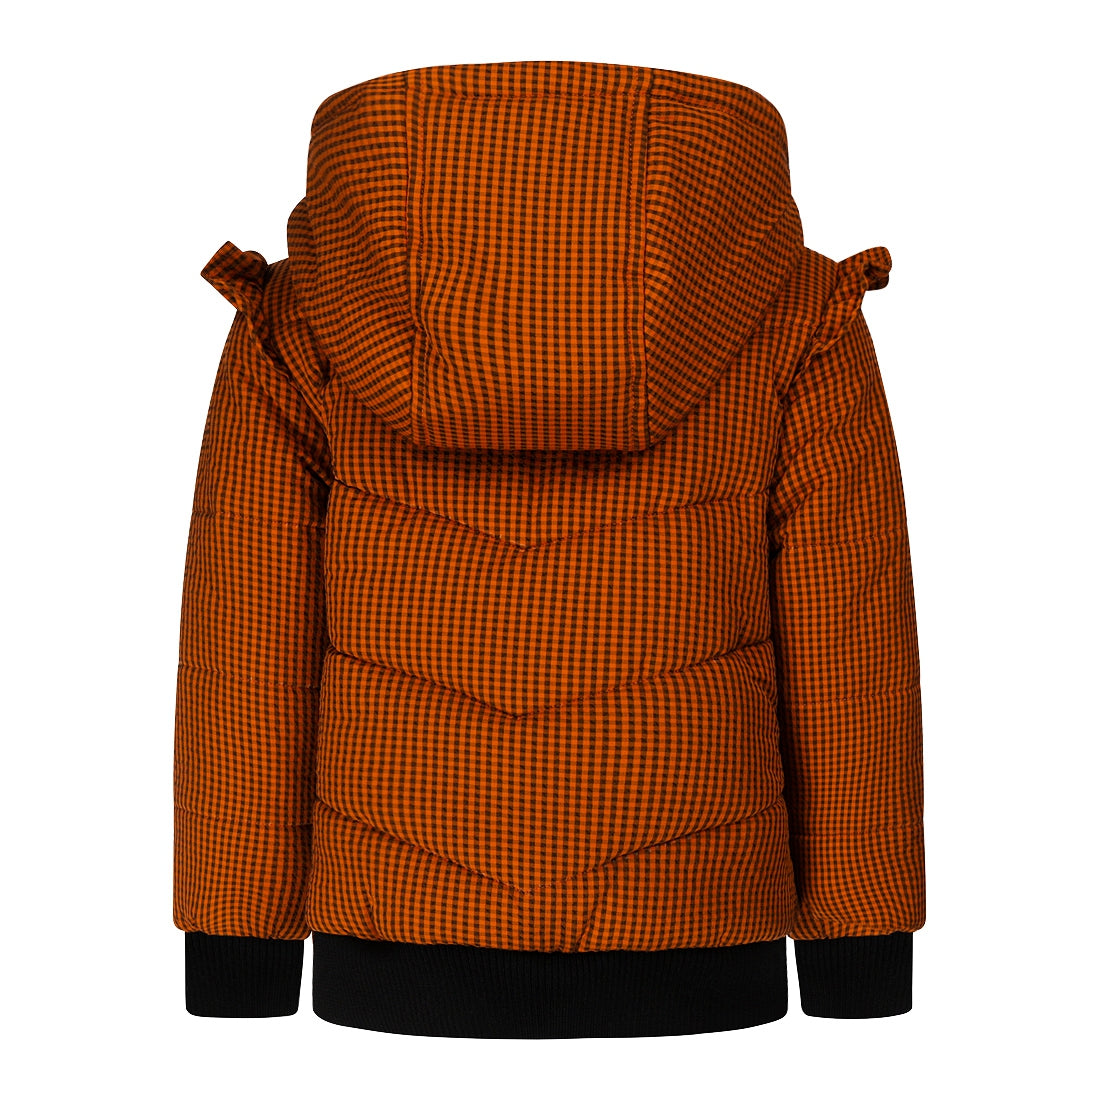 Meisjes Jacket with hood water repellent van Koko Noko in de kleur Rust in maat 128.